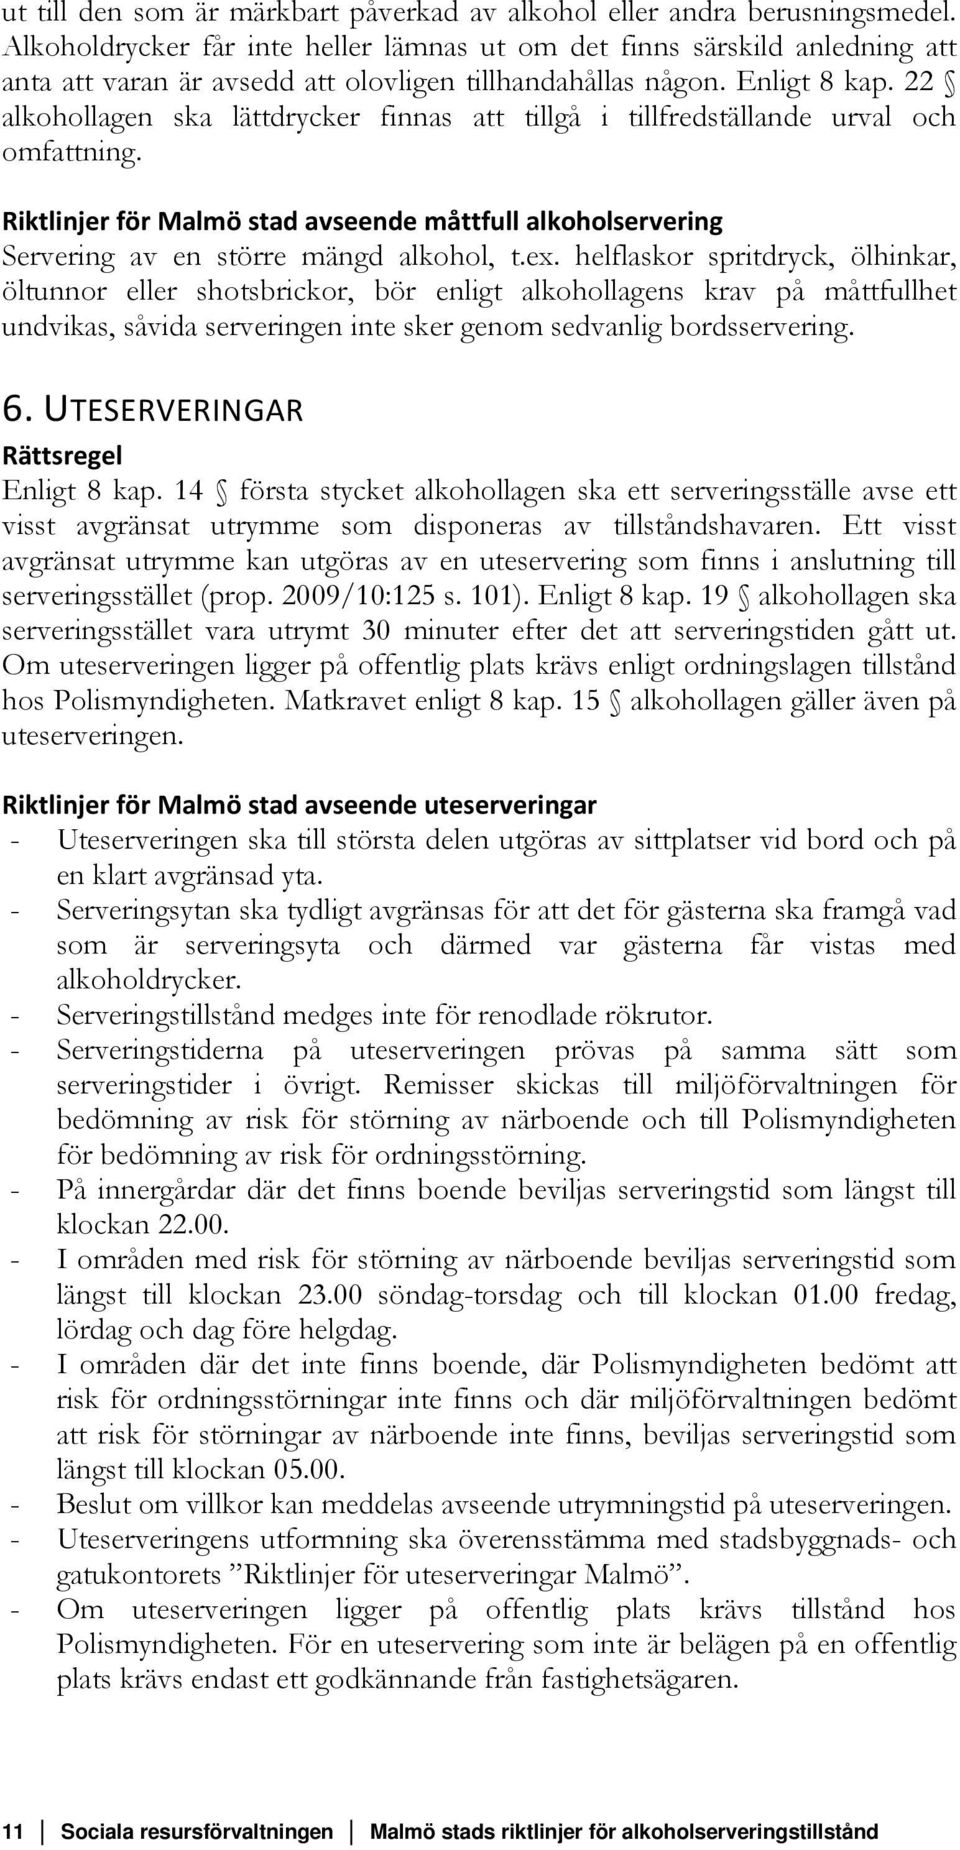 22 alkohollagen ska lättdrycker finnas att tillgå i tillfredställande urval och omfattning. Riktlinjer för Malmö stad avseende måttfull alkoholservering Servering av en större mängd alkohol, t.ex.